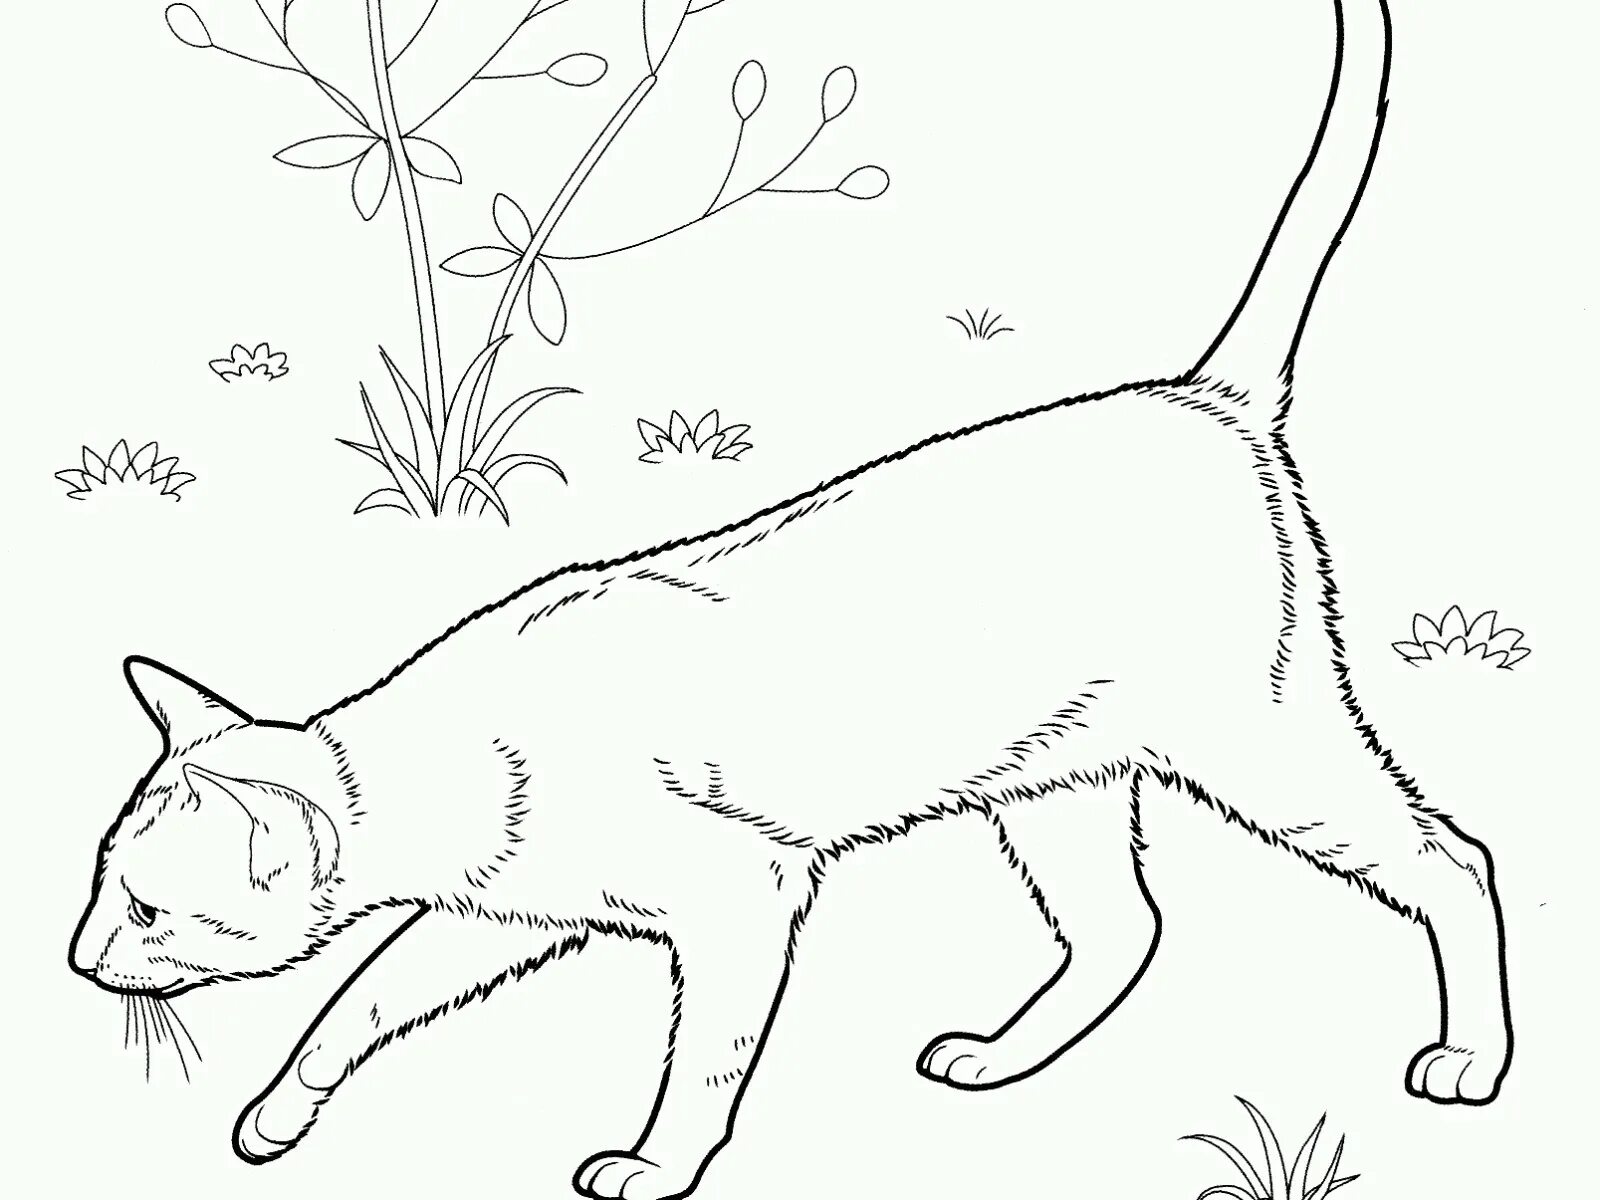 Siamese cat #2